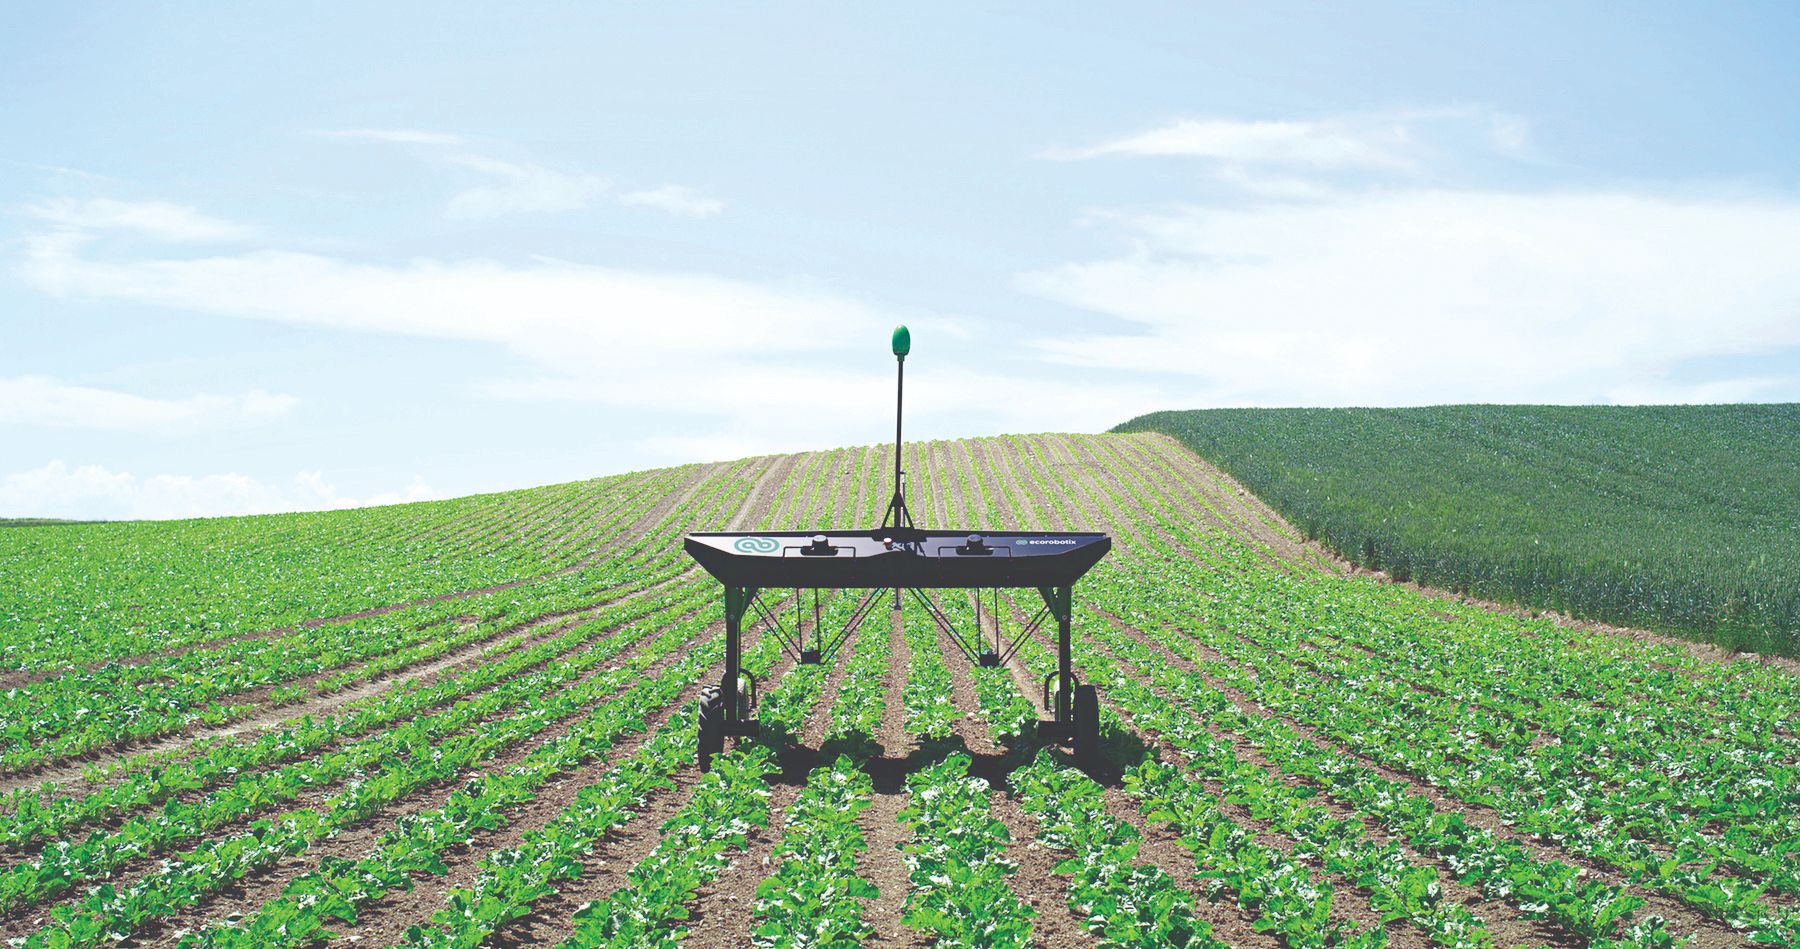 poljoprivredni roboti u poljoprivredi